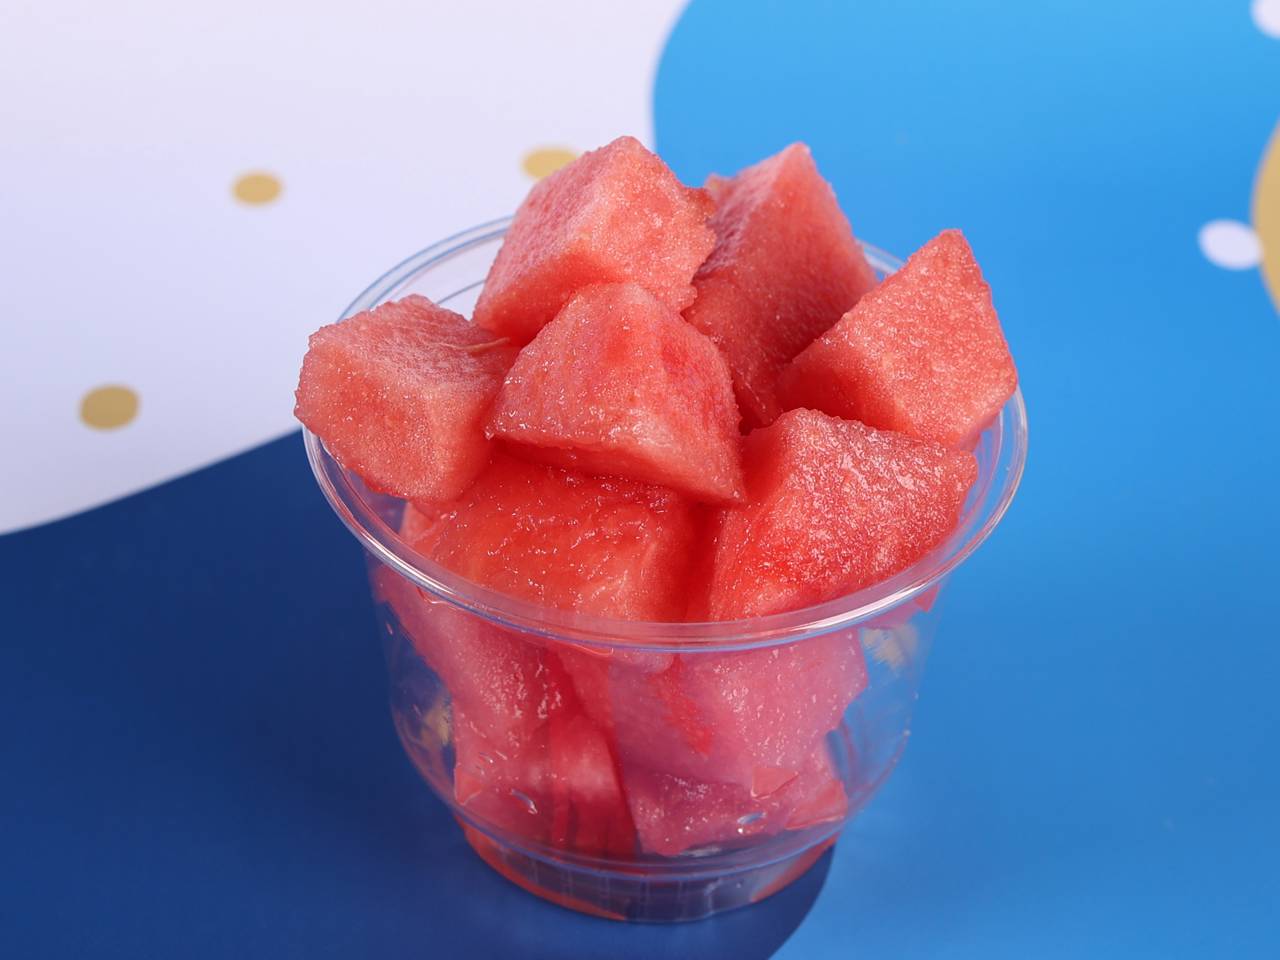 Watermelon Cuts